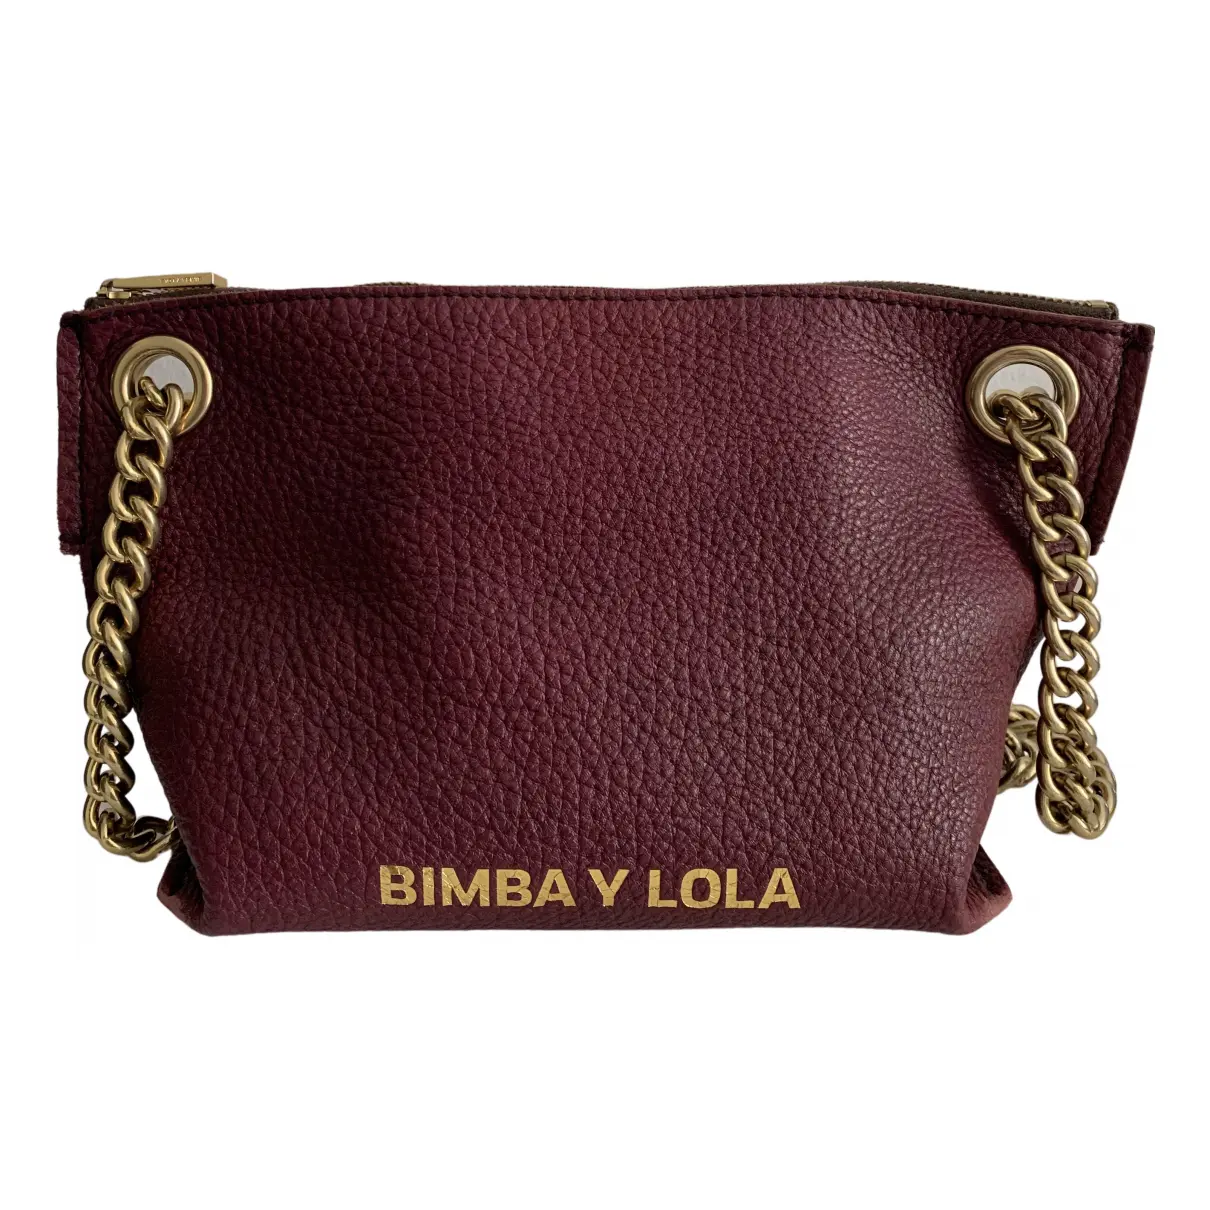 Shearling handbag Bimba y Lola